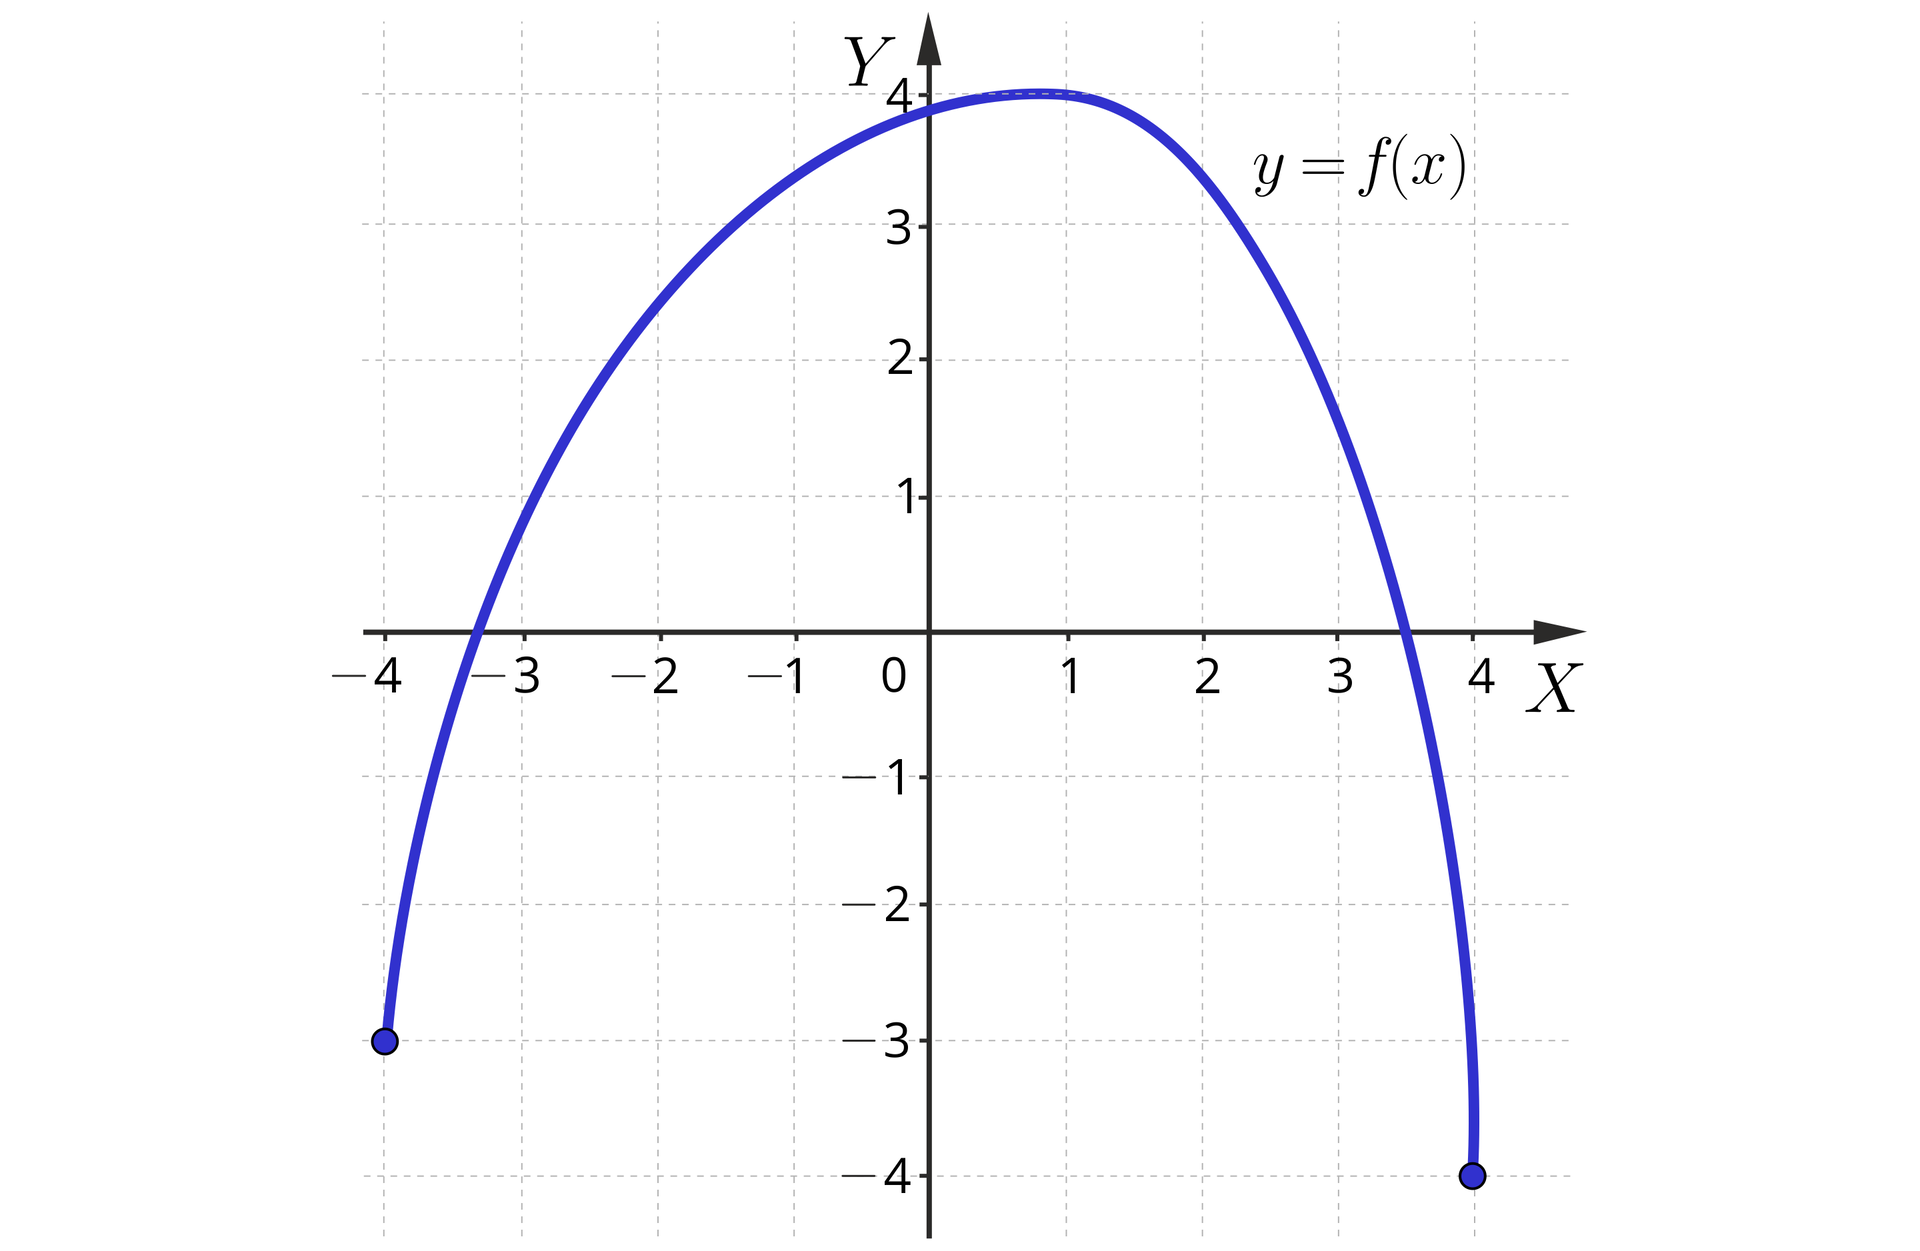 Ilustracja przedstawia układ współrzędnych z poziomą osią X od minus czterech do czterech oraz z pionową osią Y od minus czterech do czterech. Na płaszczyźnie narysowano wykres funkcji f będący łukiem o lewym końcu o współrzędnych minus 4, minus trzy. Stąd łuk biegnie w górę, zakręcając w prawo. Najwyżej położonym punktem łuku jest punkt o współrzędnych 1, cztery. Z tego punktu łuk zaczyna biec w dół do swojego prawego końca o współrzędnych , minus cztery.